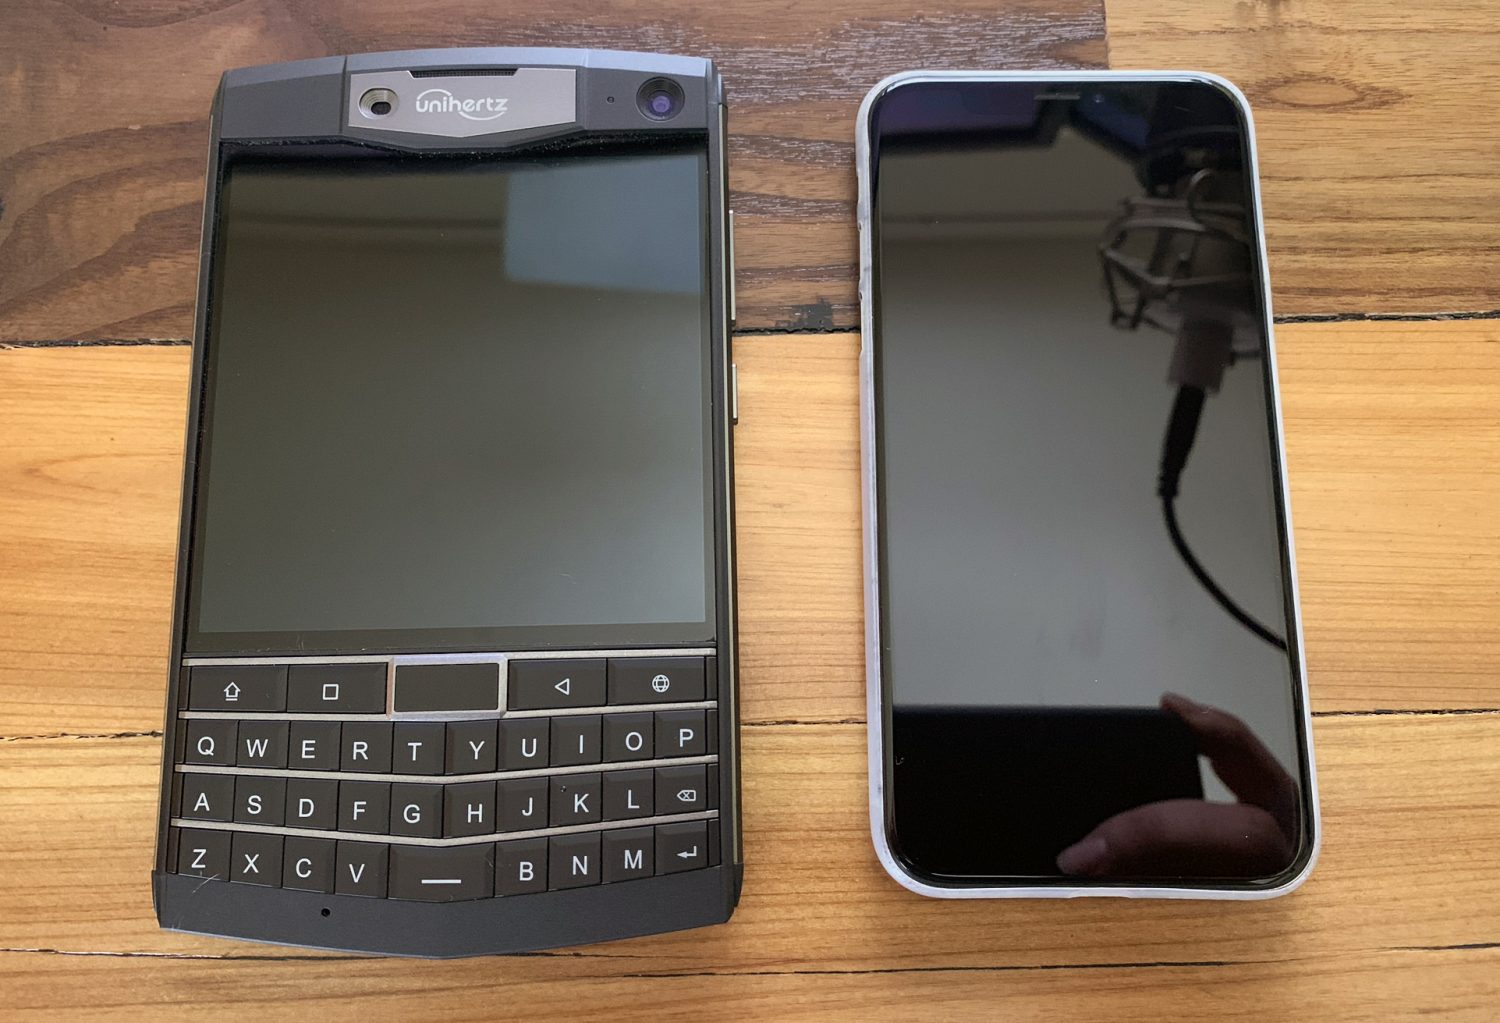 The Unihertz Titan is a bargain-priced Blackberry-alike built for